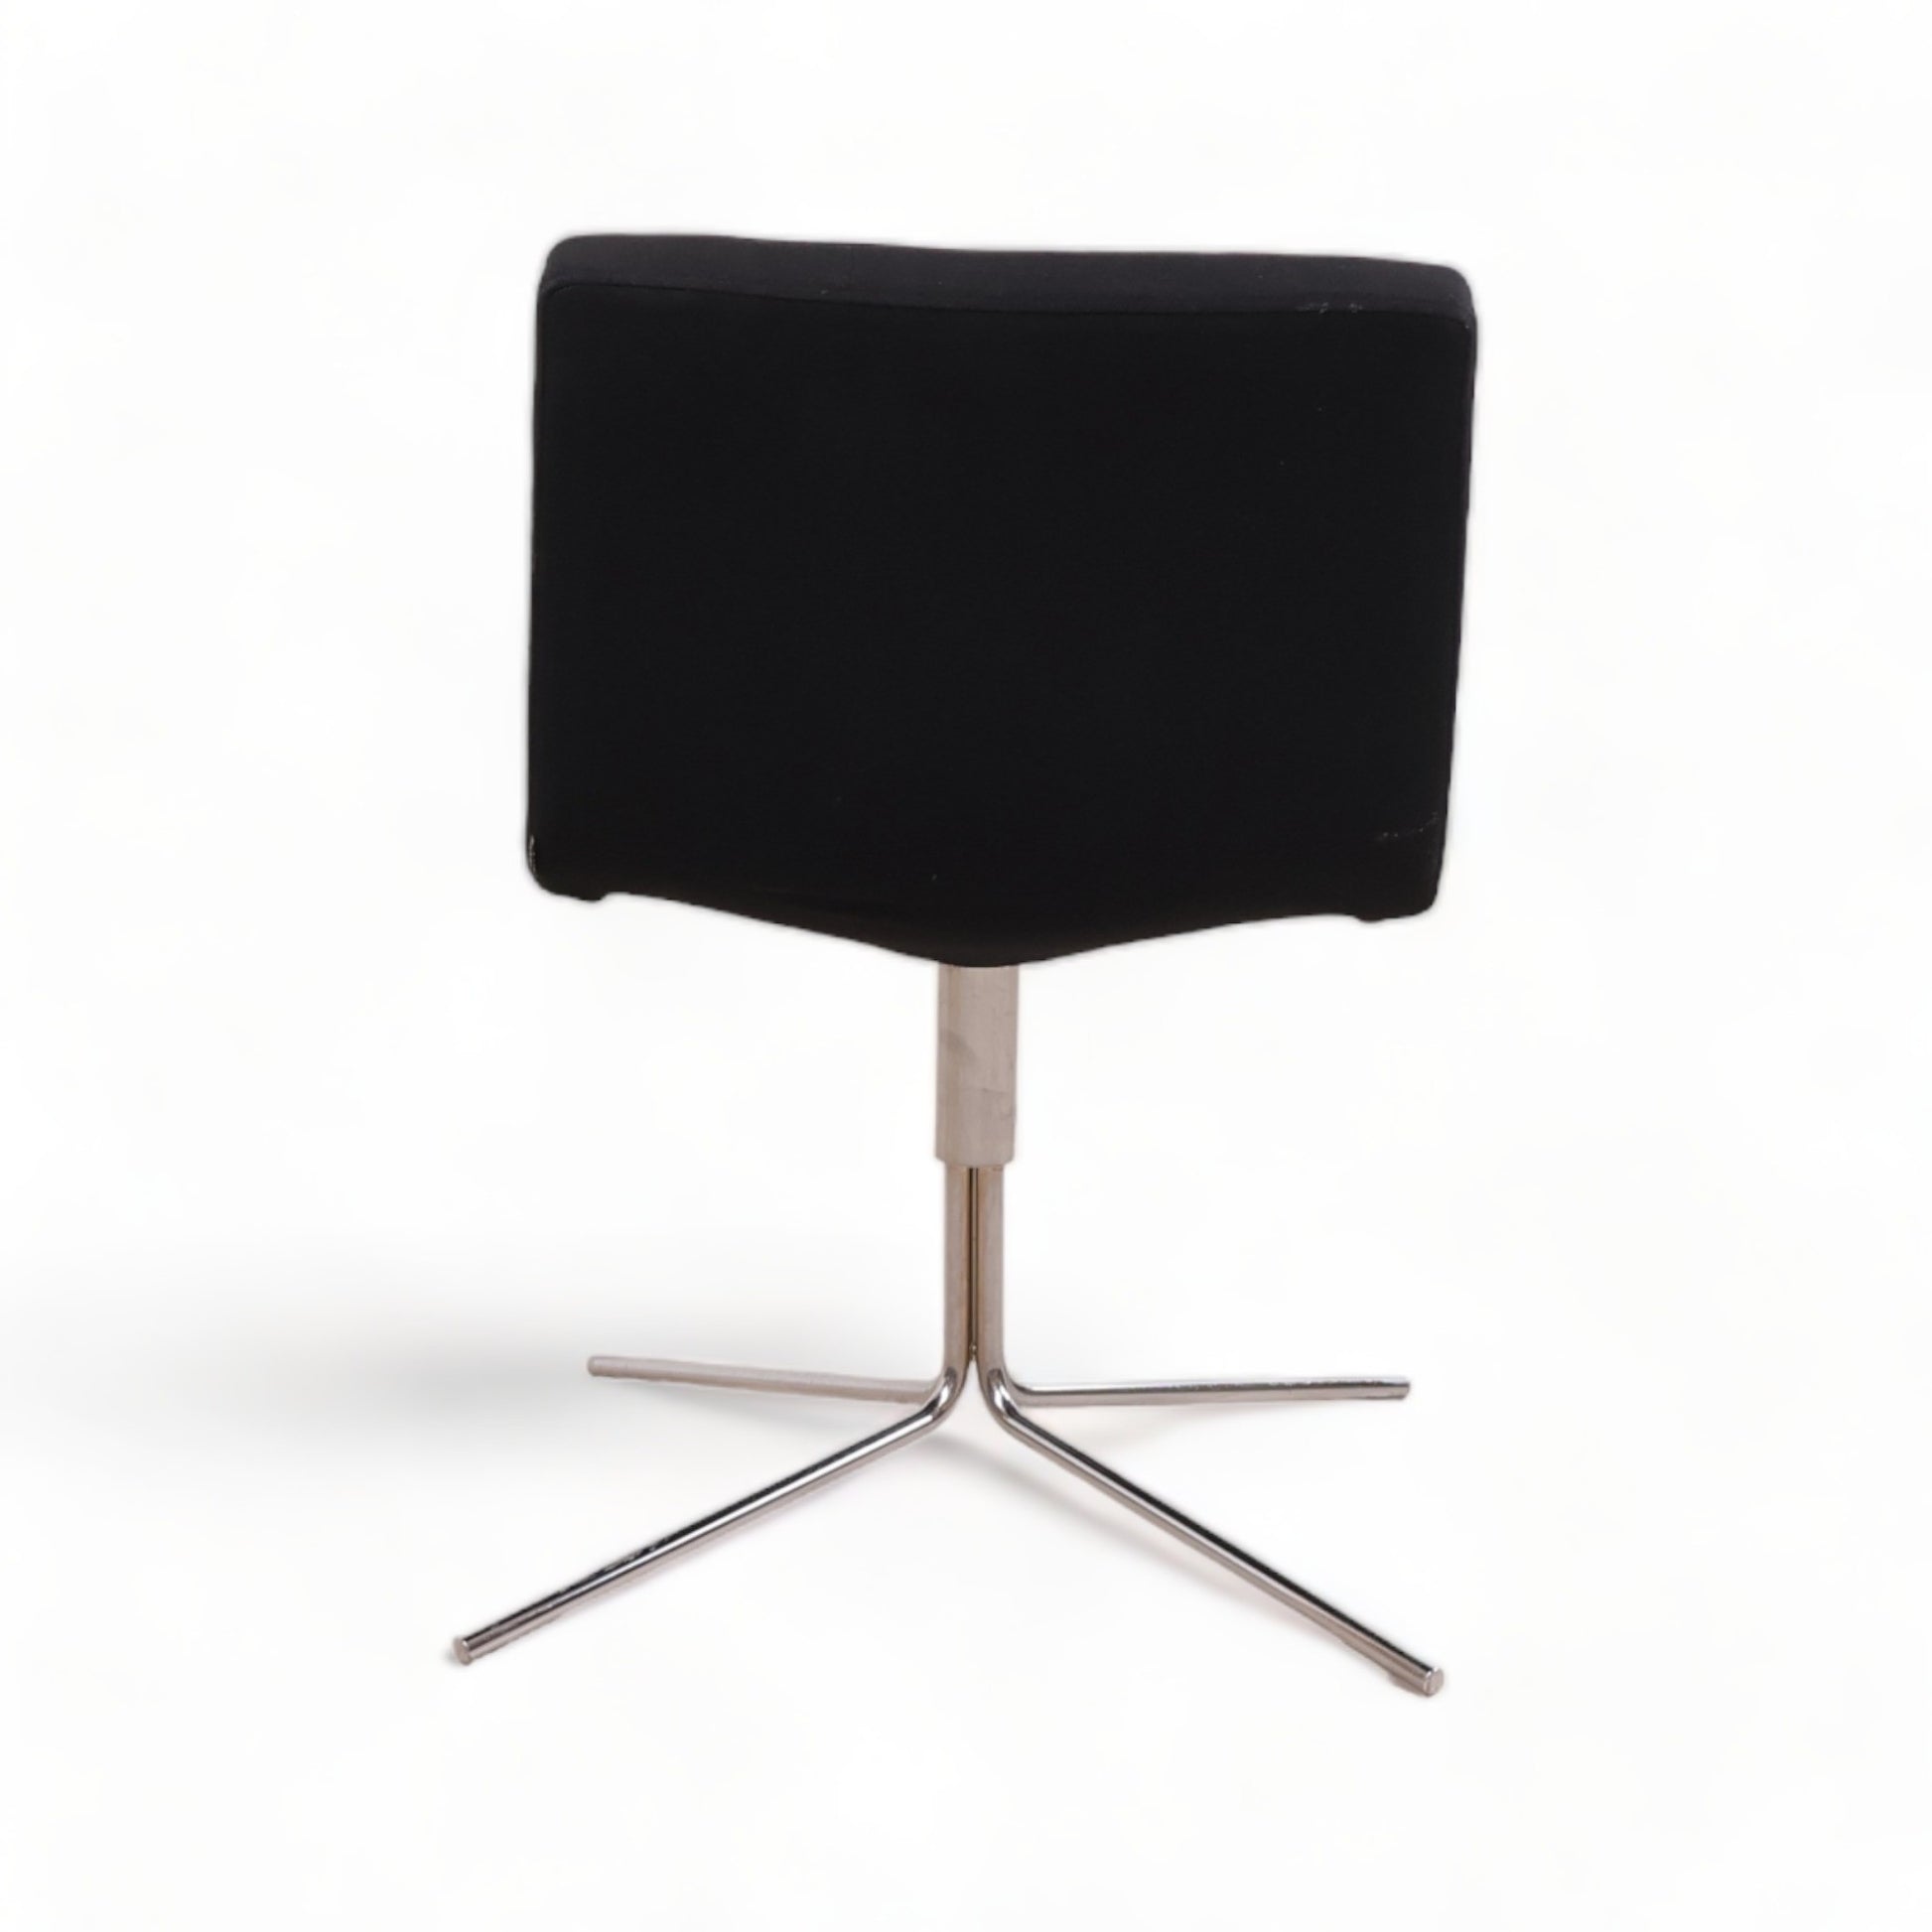 Nyrenset | Offecct Bond Easy stol i sort ull / krom